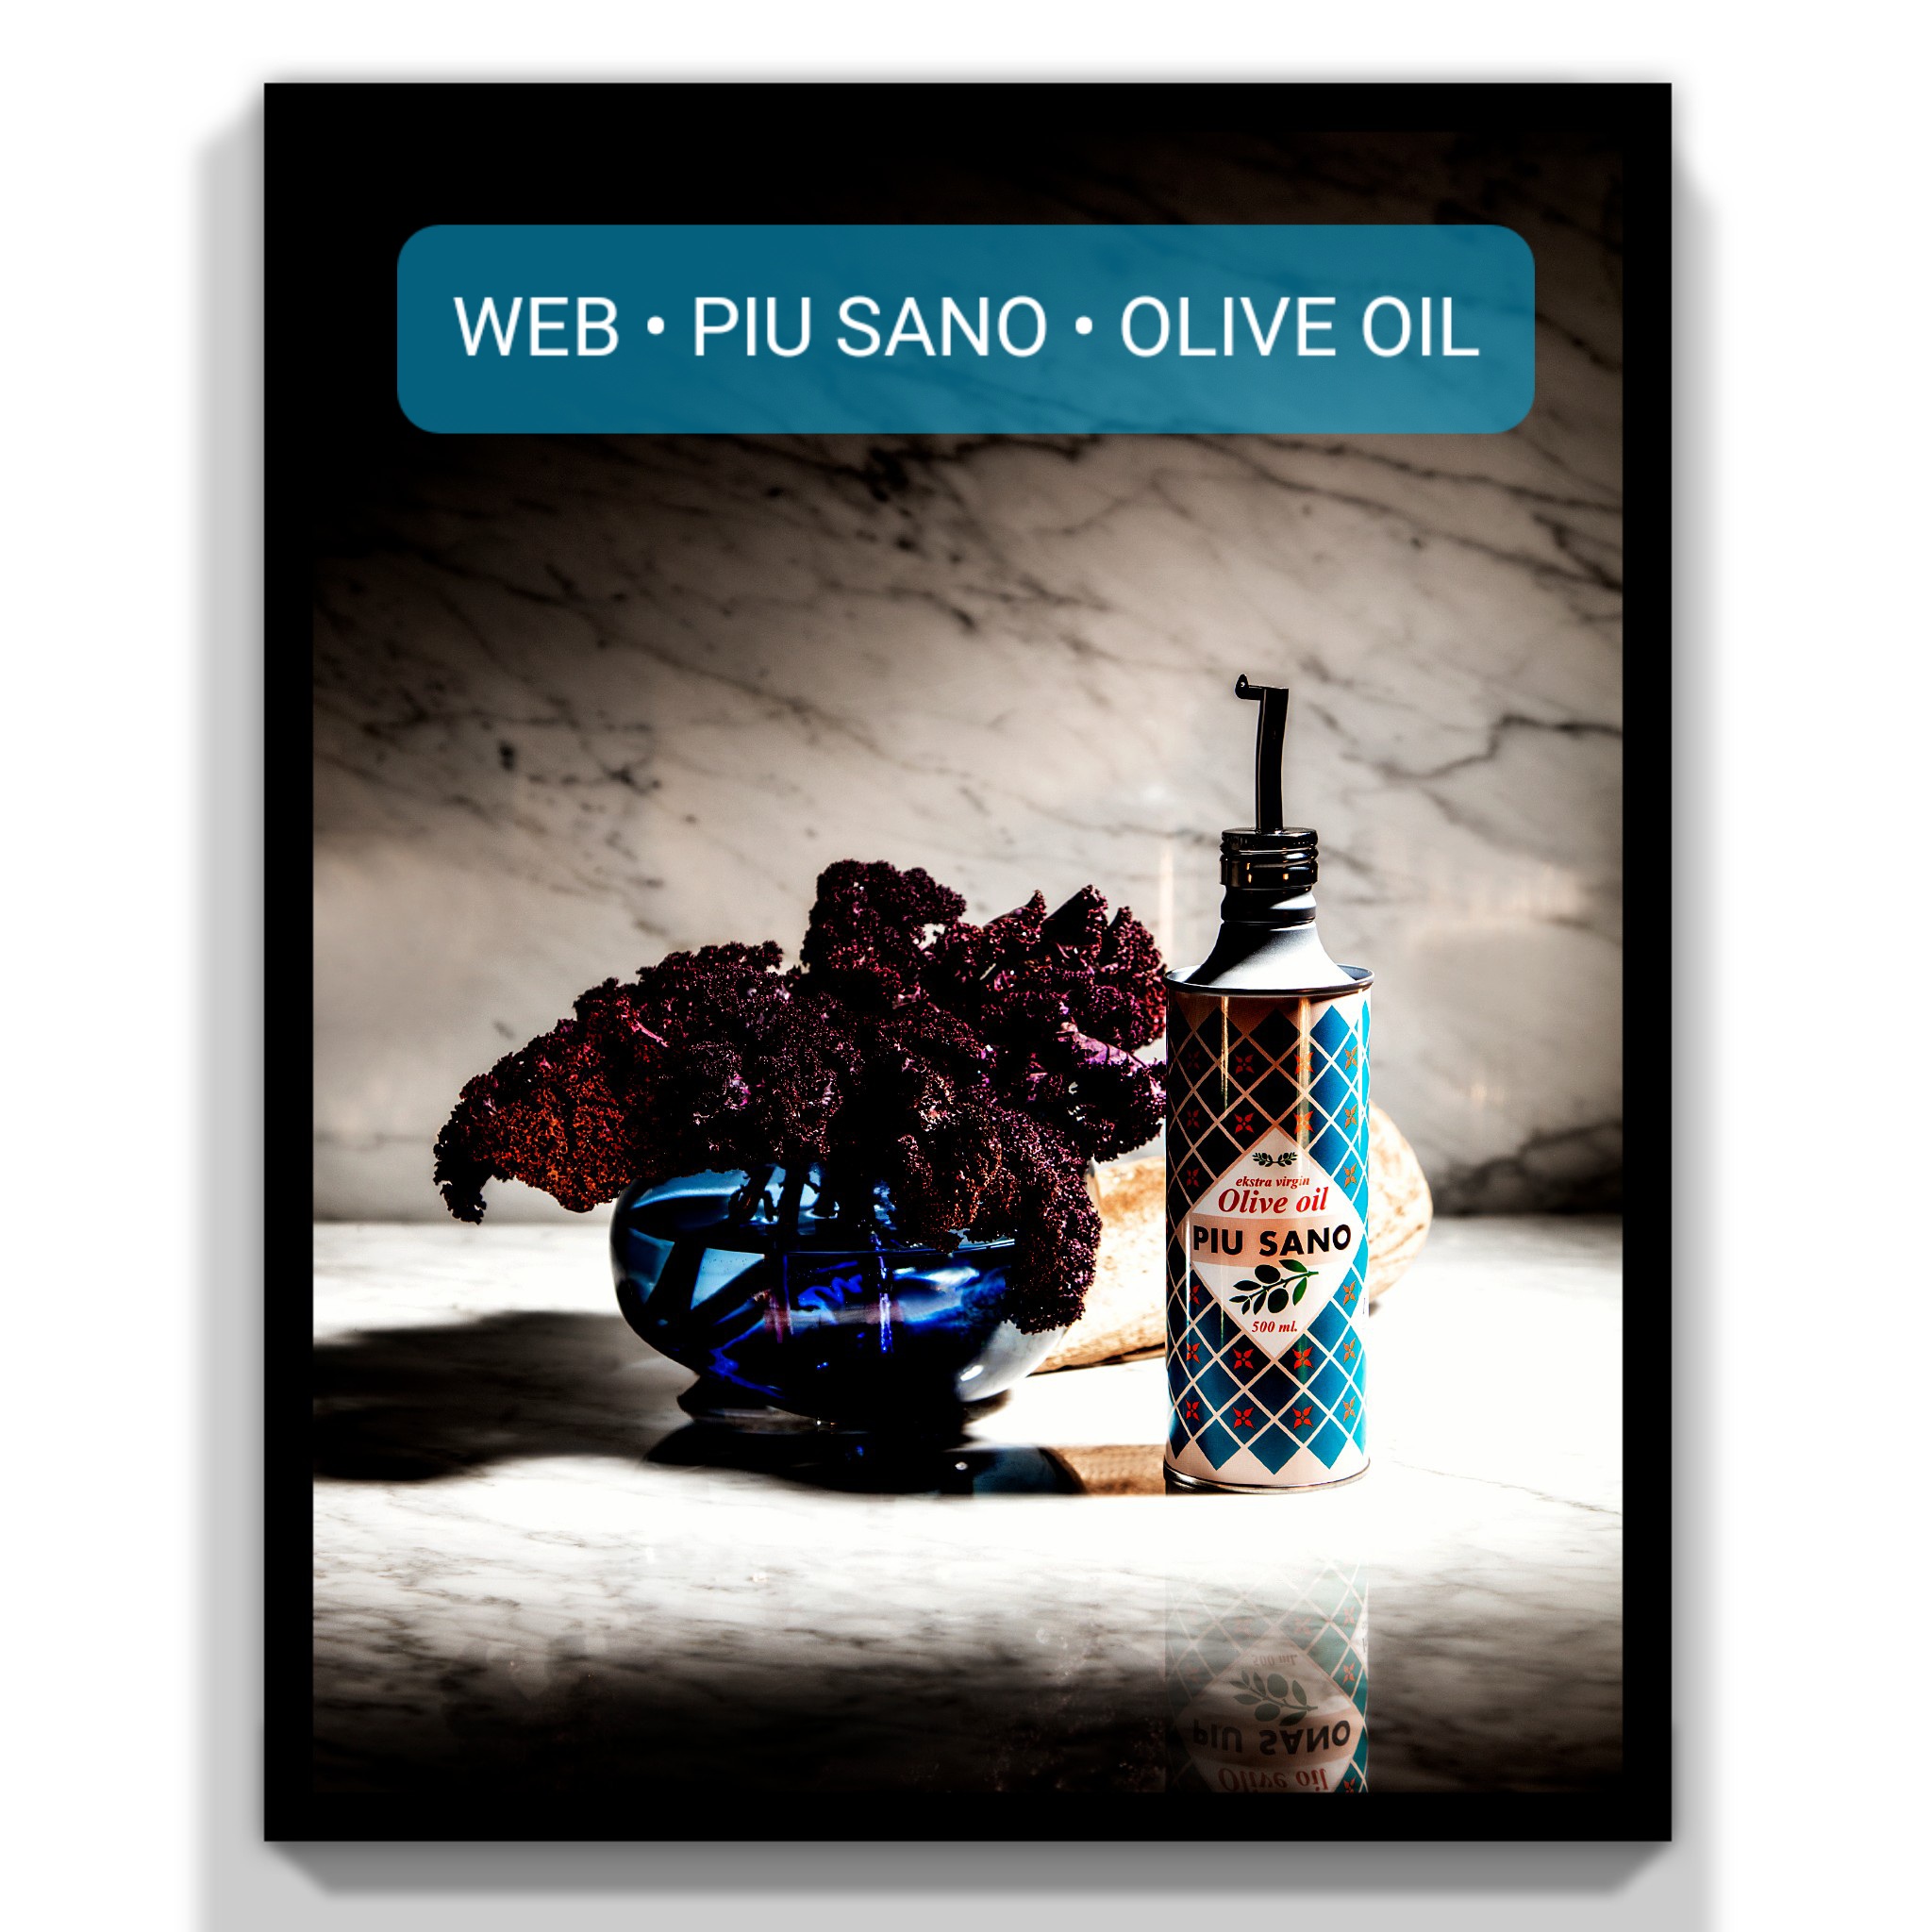 Pio Sano Olive Oil